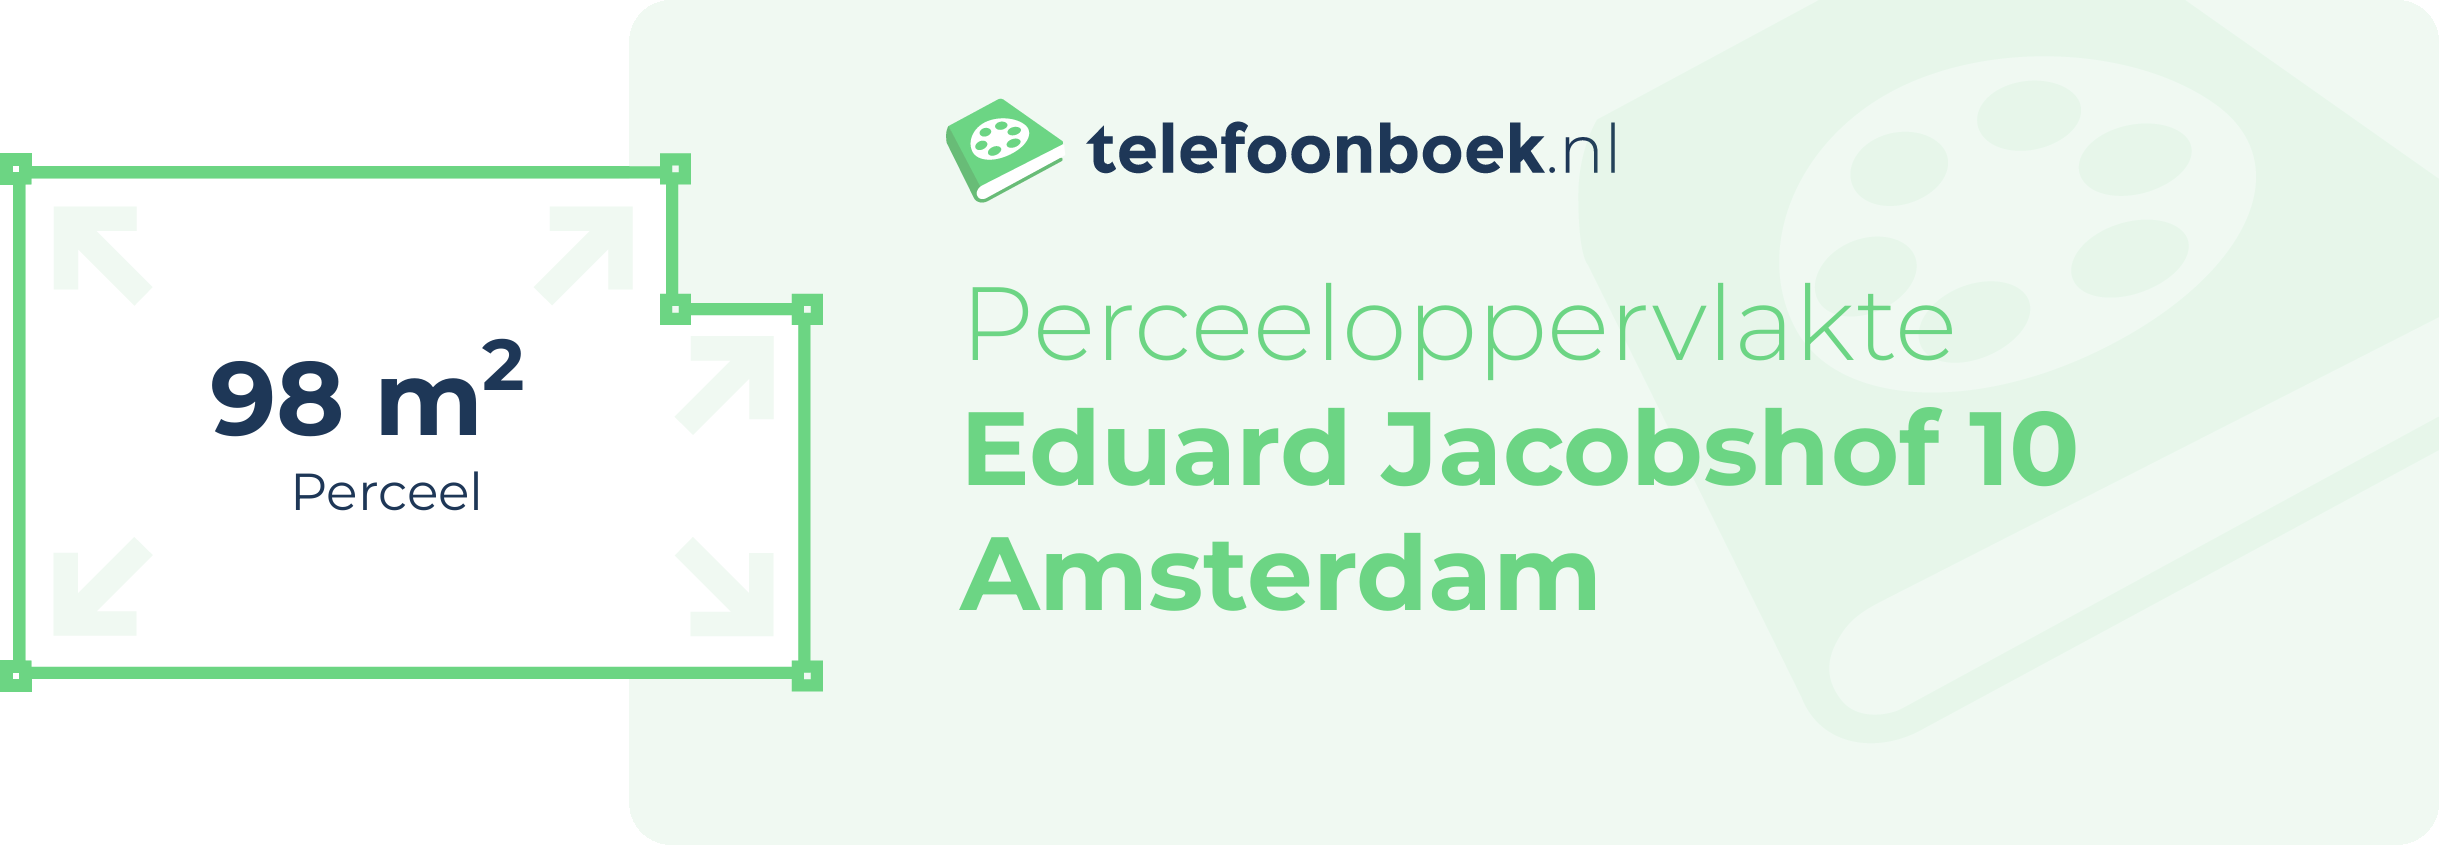 Perceeloppervlakte Eduard Jacobshof 10 Amsterdam